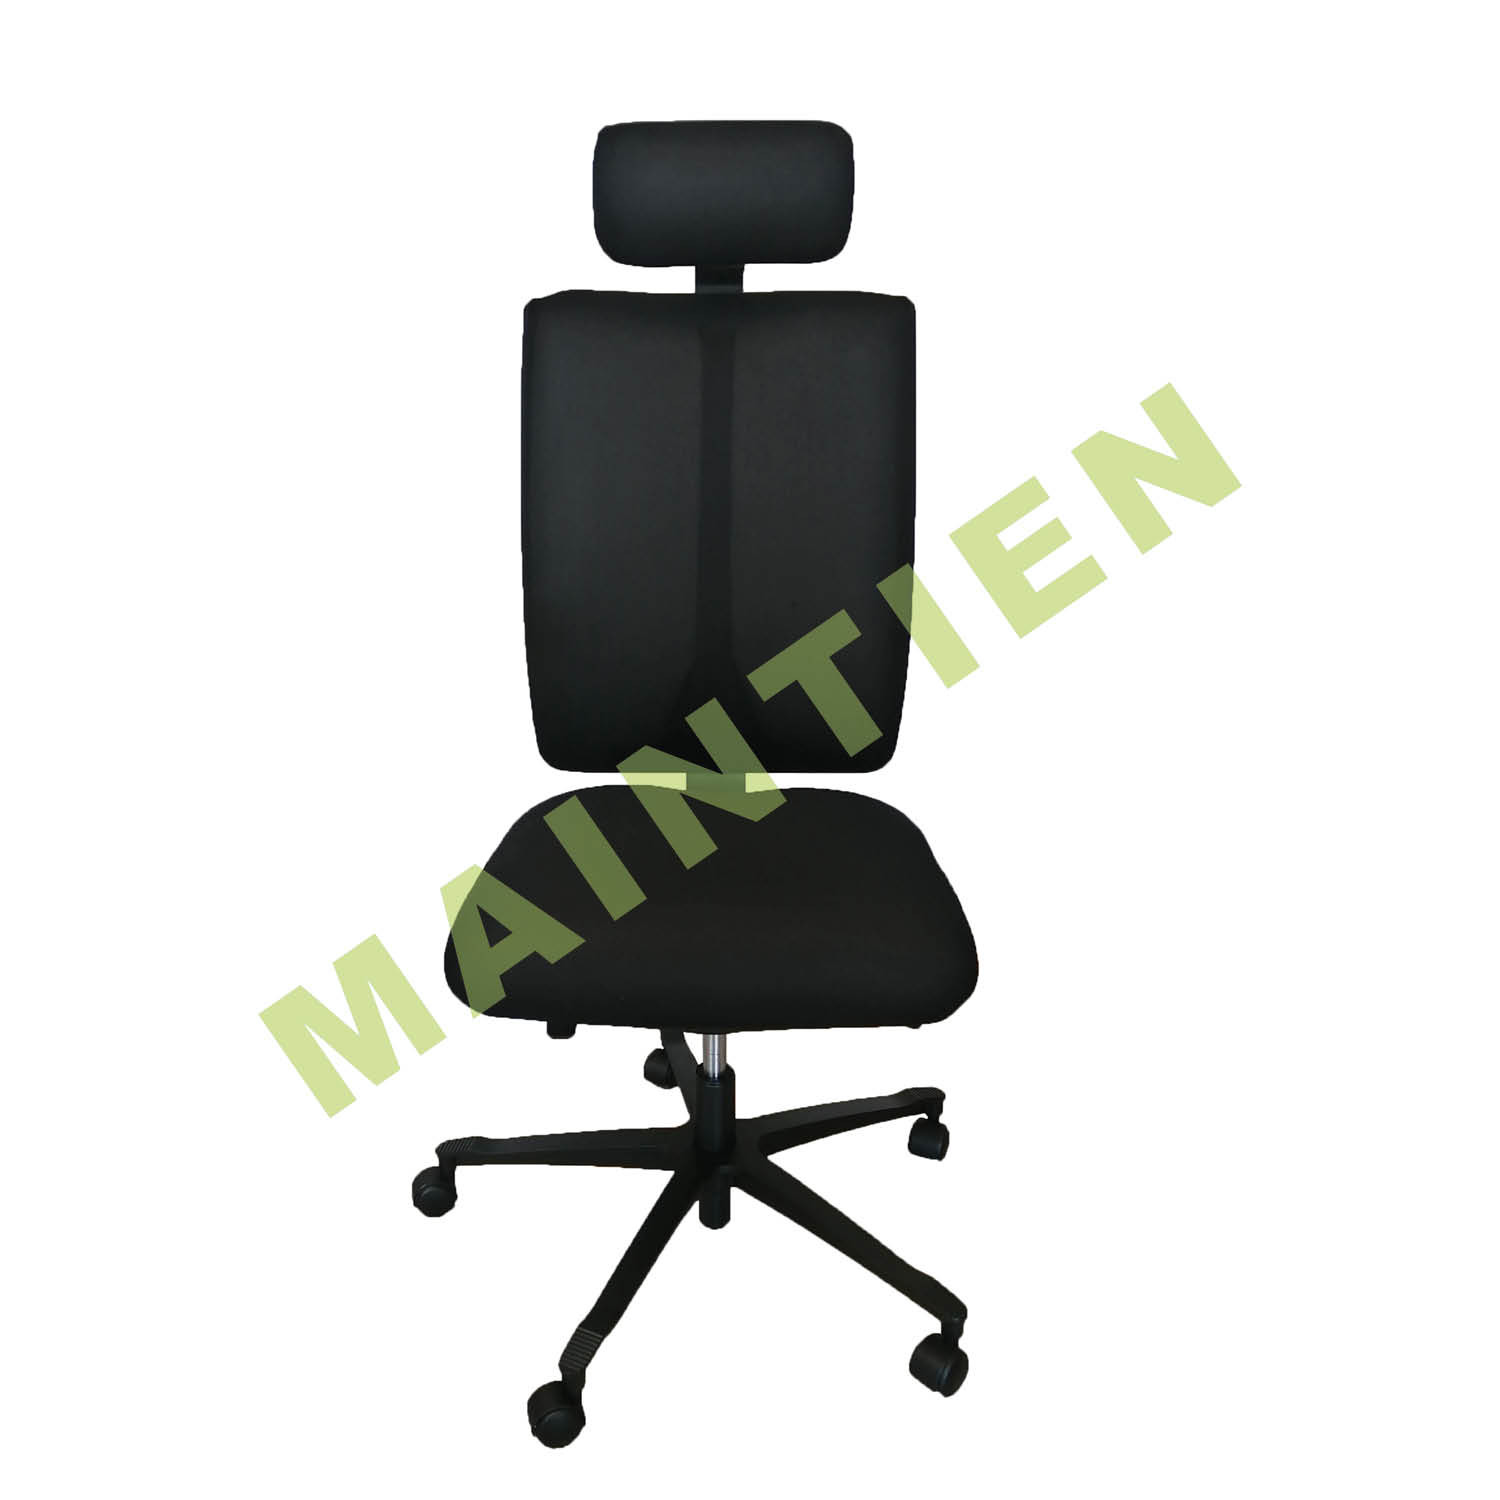 Fauteuil de bureau mal de dos avec maintien lombaire - Efficient Chair